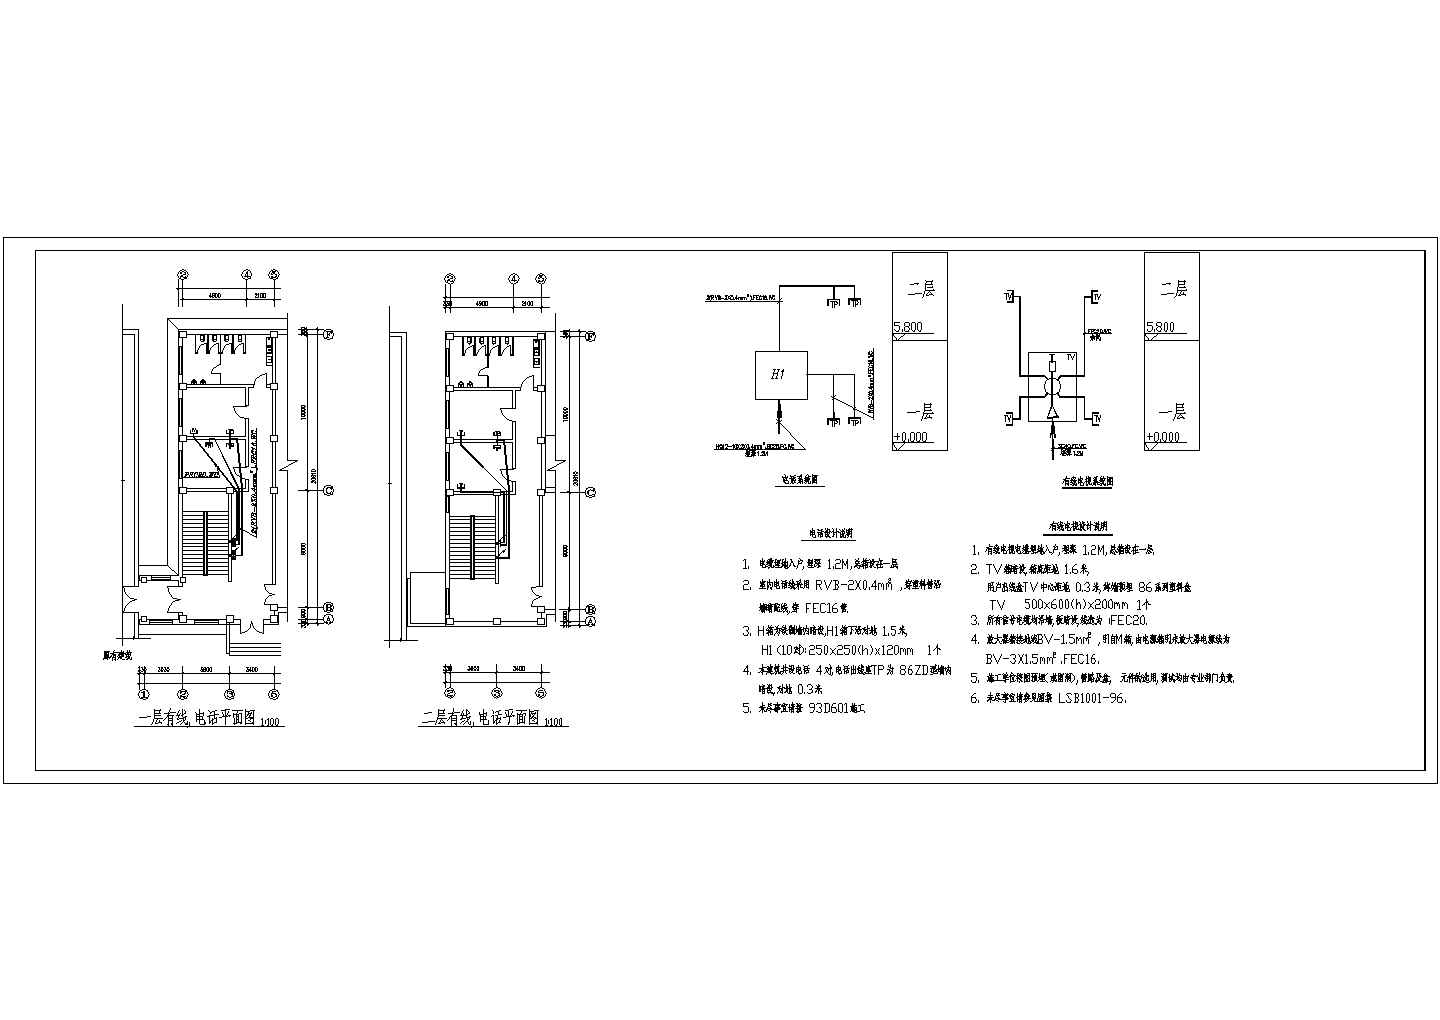 某射击馆CAD电气设计详细构造图